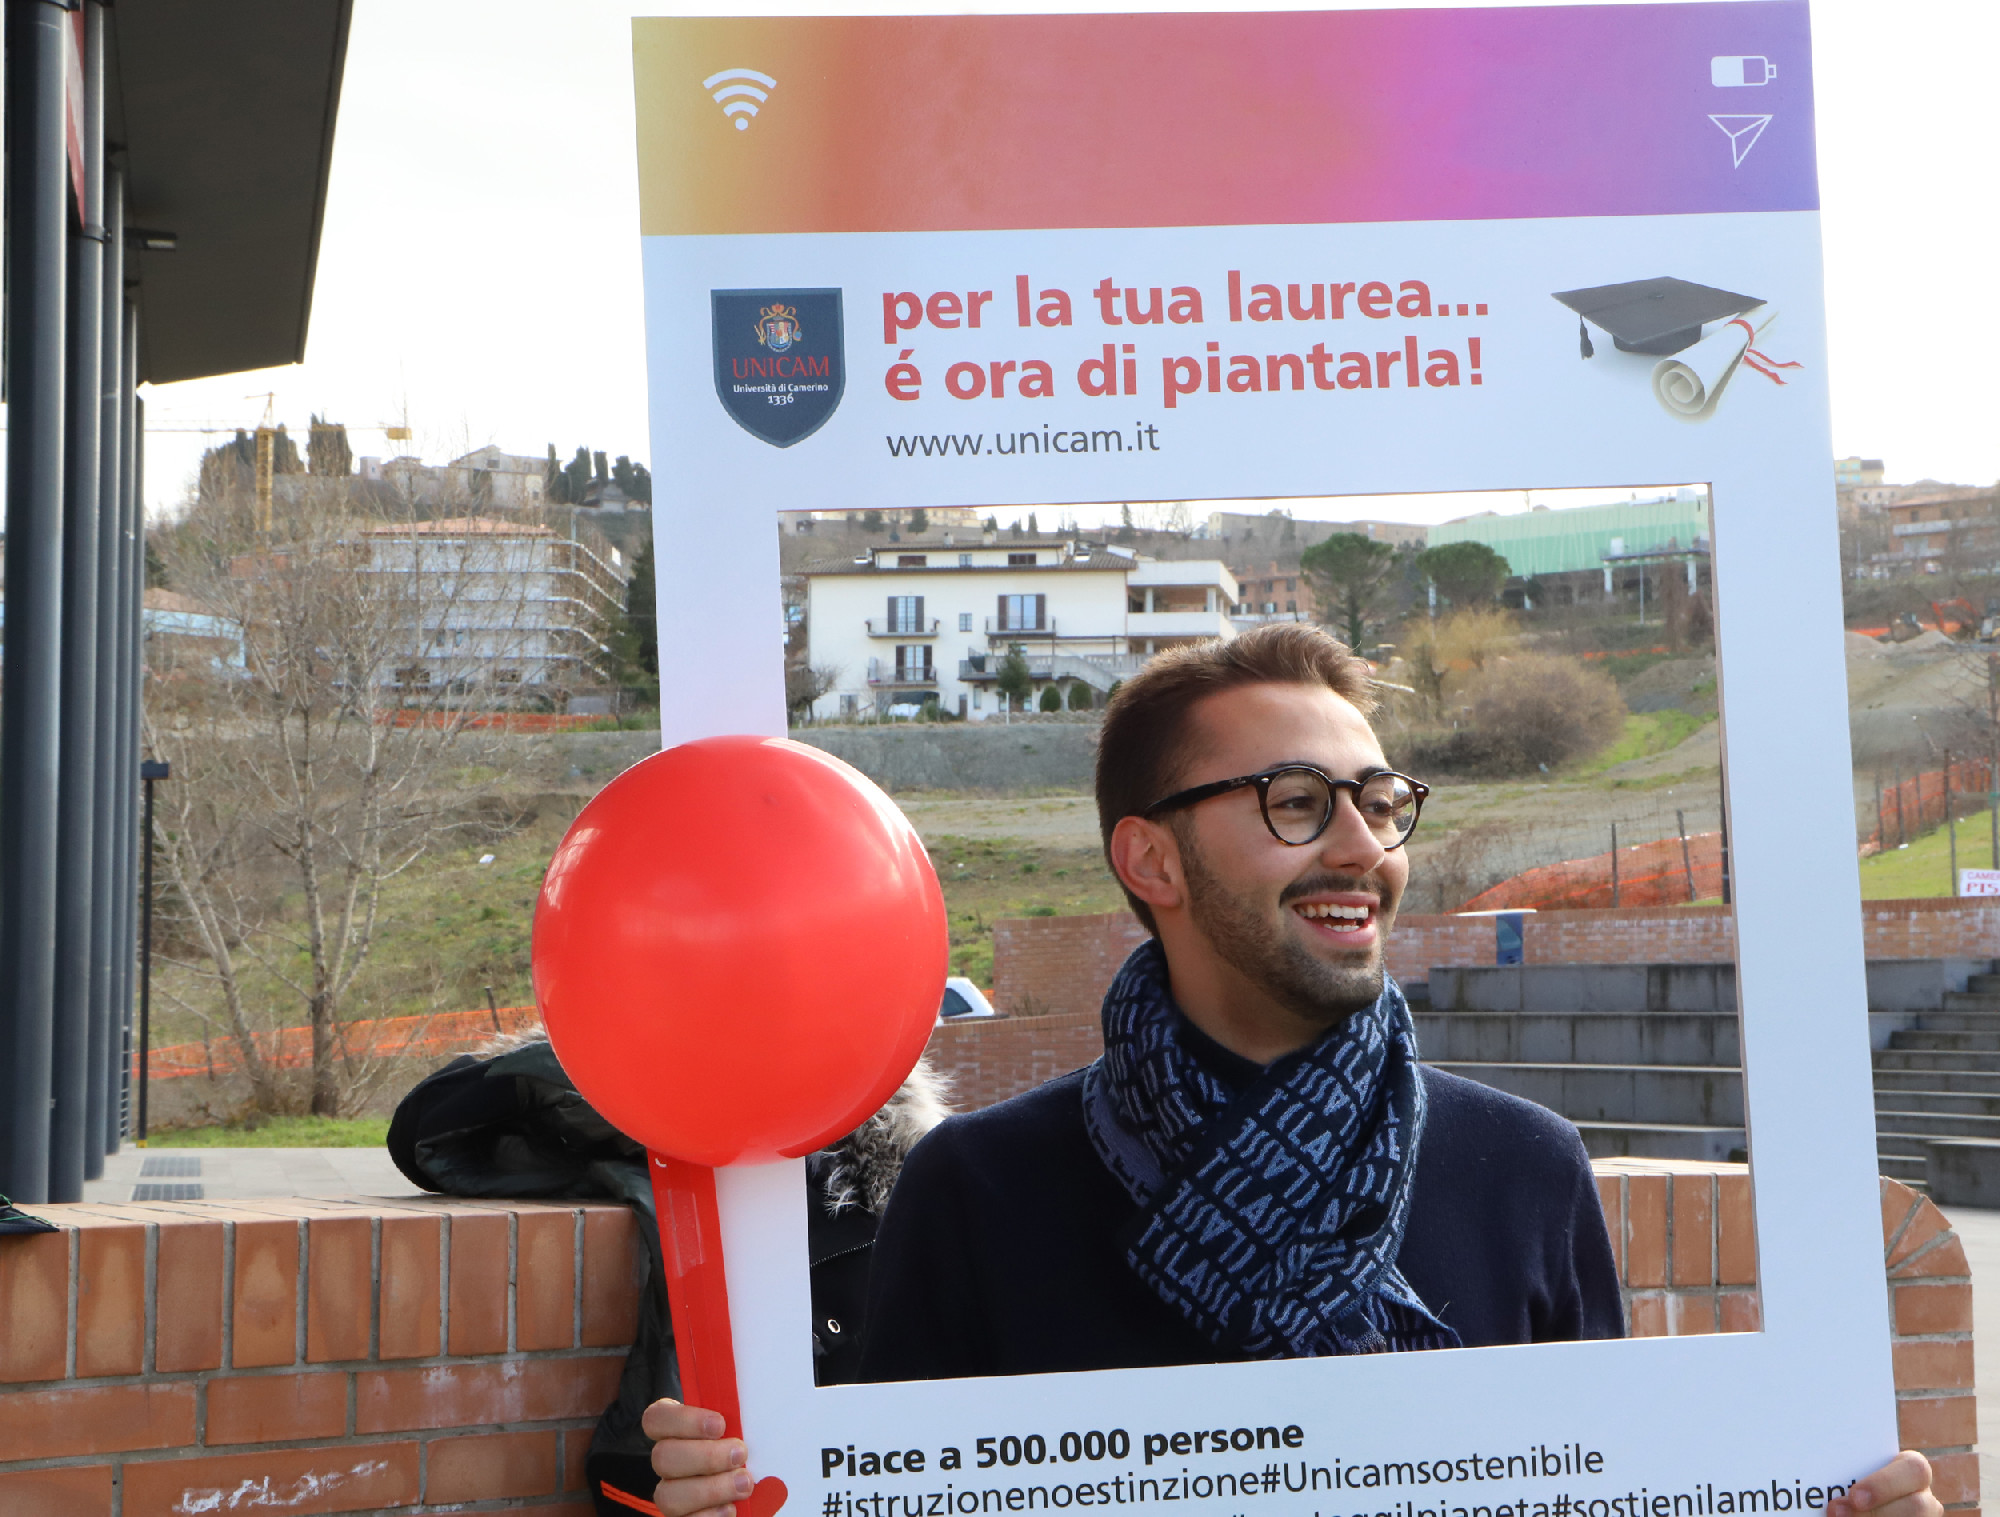 La festa di laurea con gadget ecosostenibili: al via l'iniziativa Unicam -  Picchio News - Il giornale tra la gente per la gente